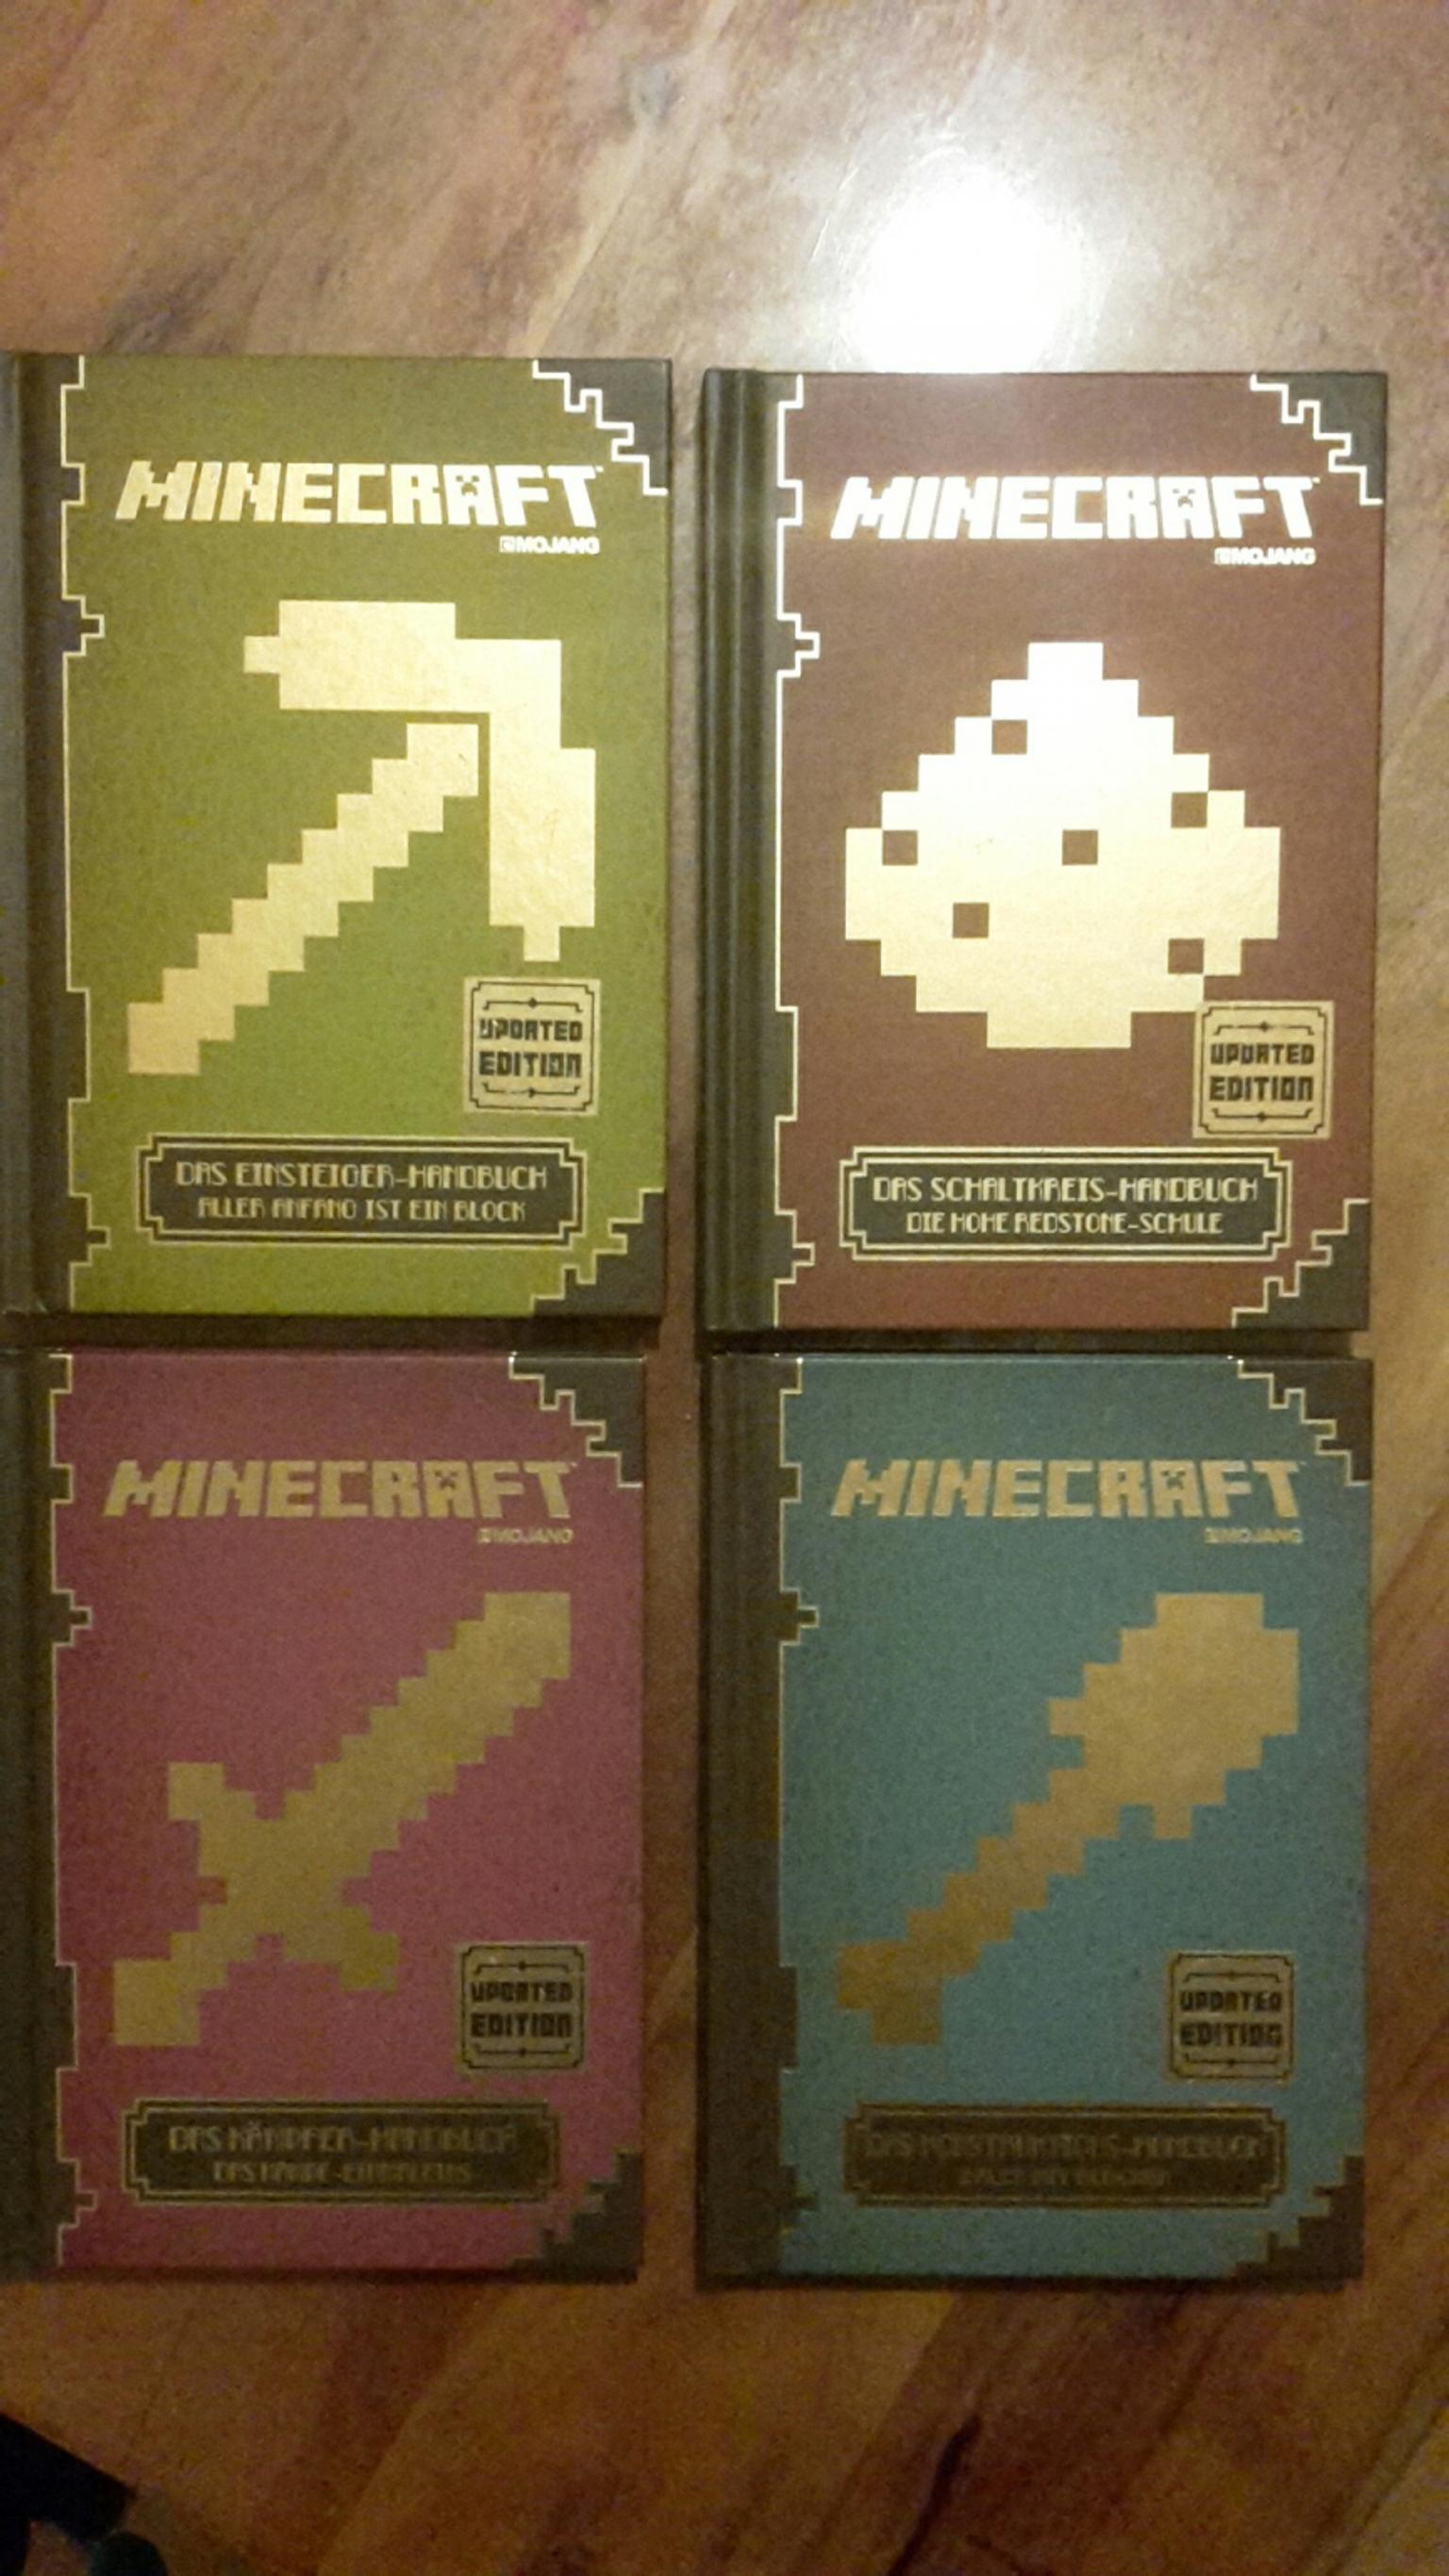 Minecraft Das Einsteiger-Handbuch Aller Anfang ist ein Block